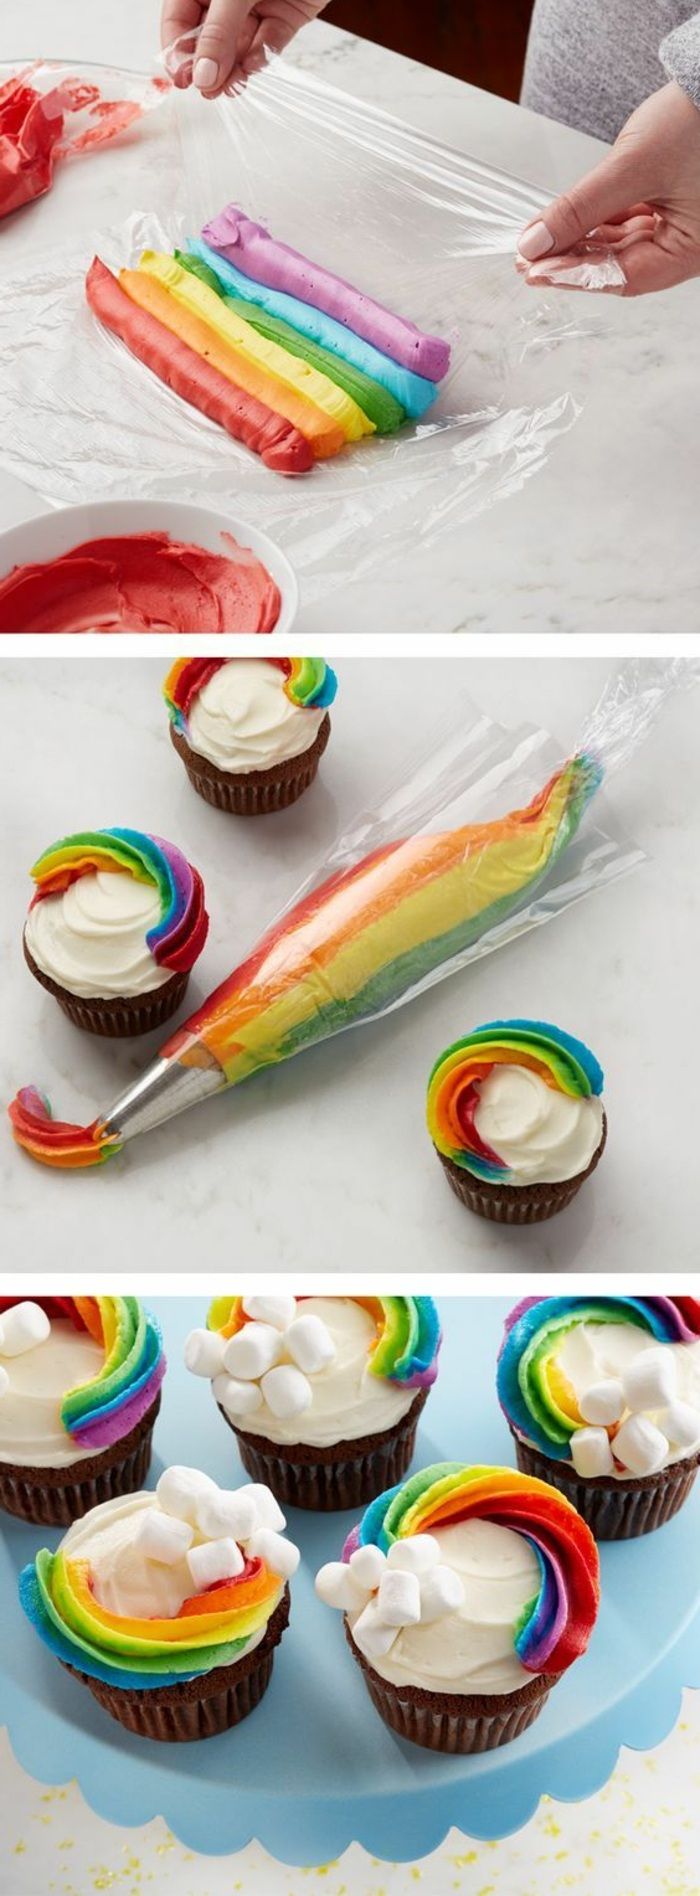 cupcakes versieren met room in de kleuren van de regenboog